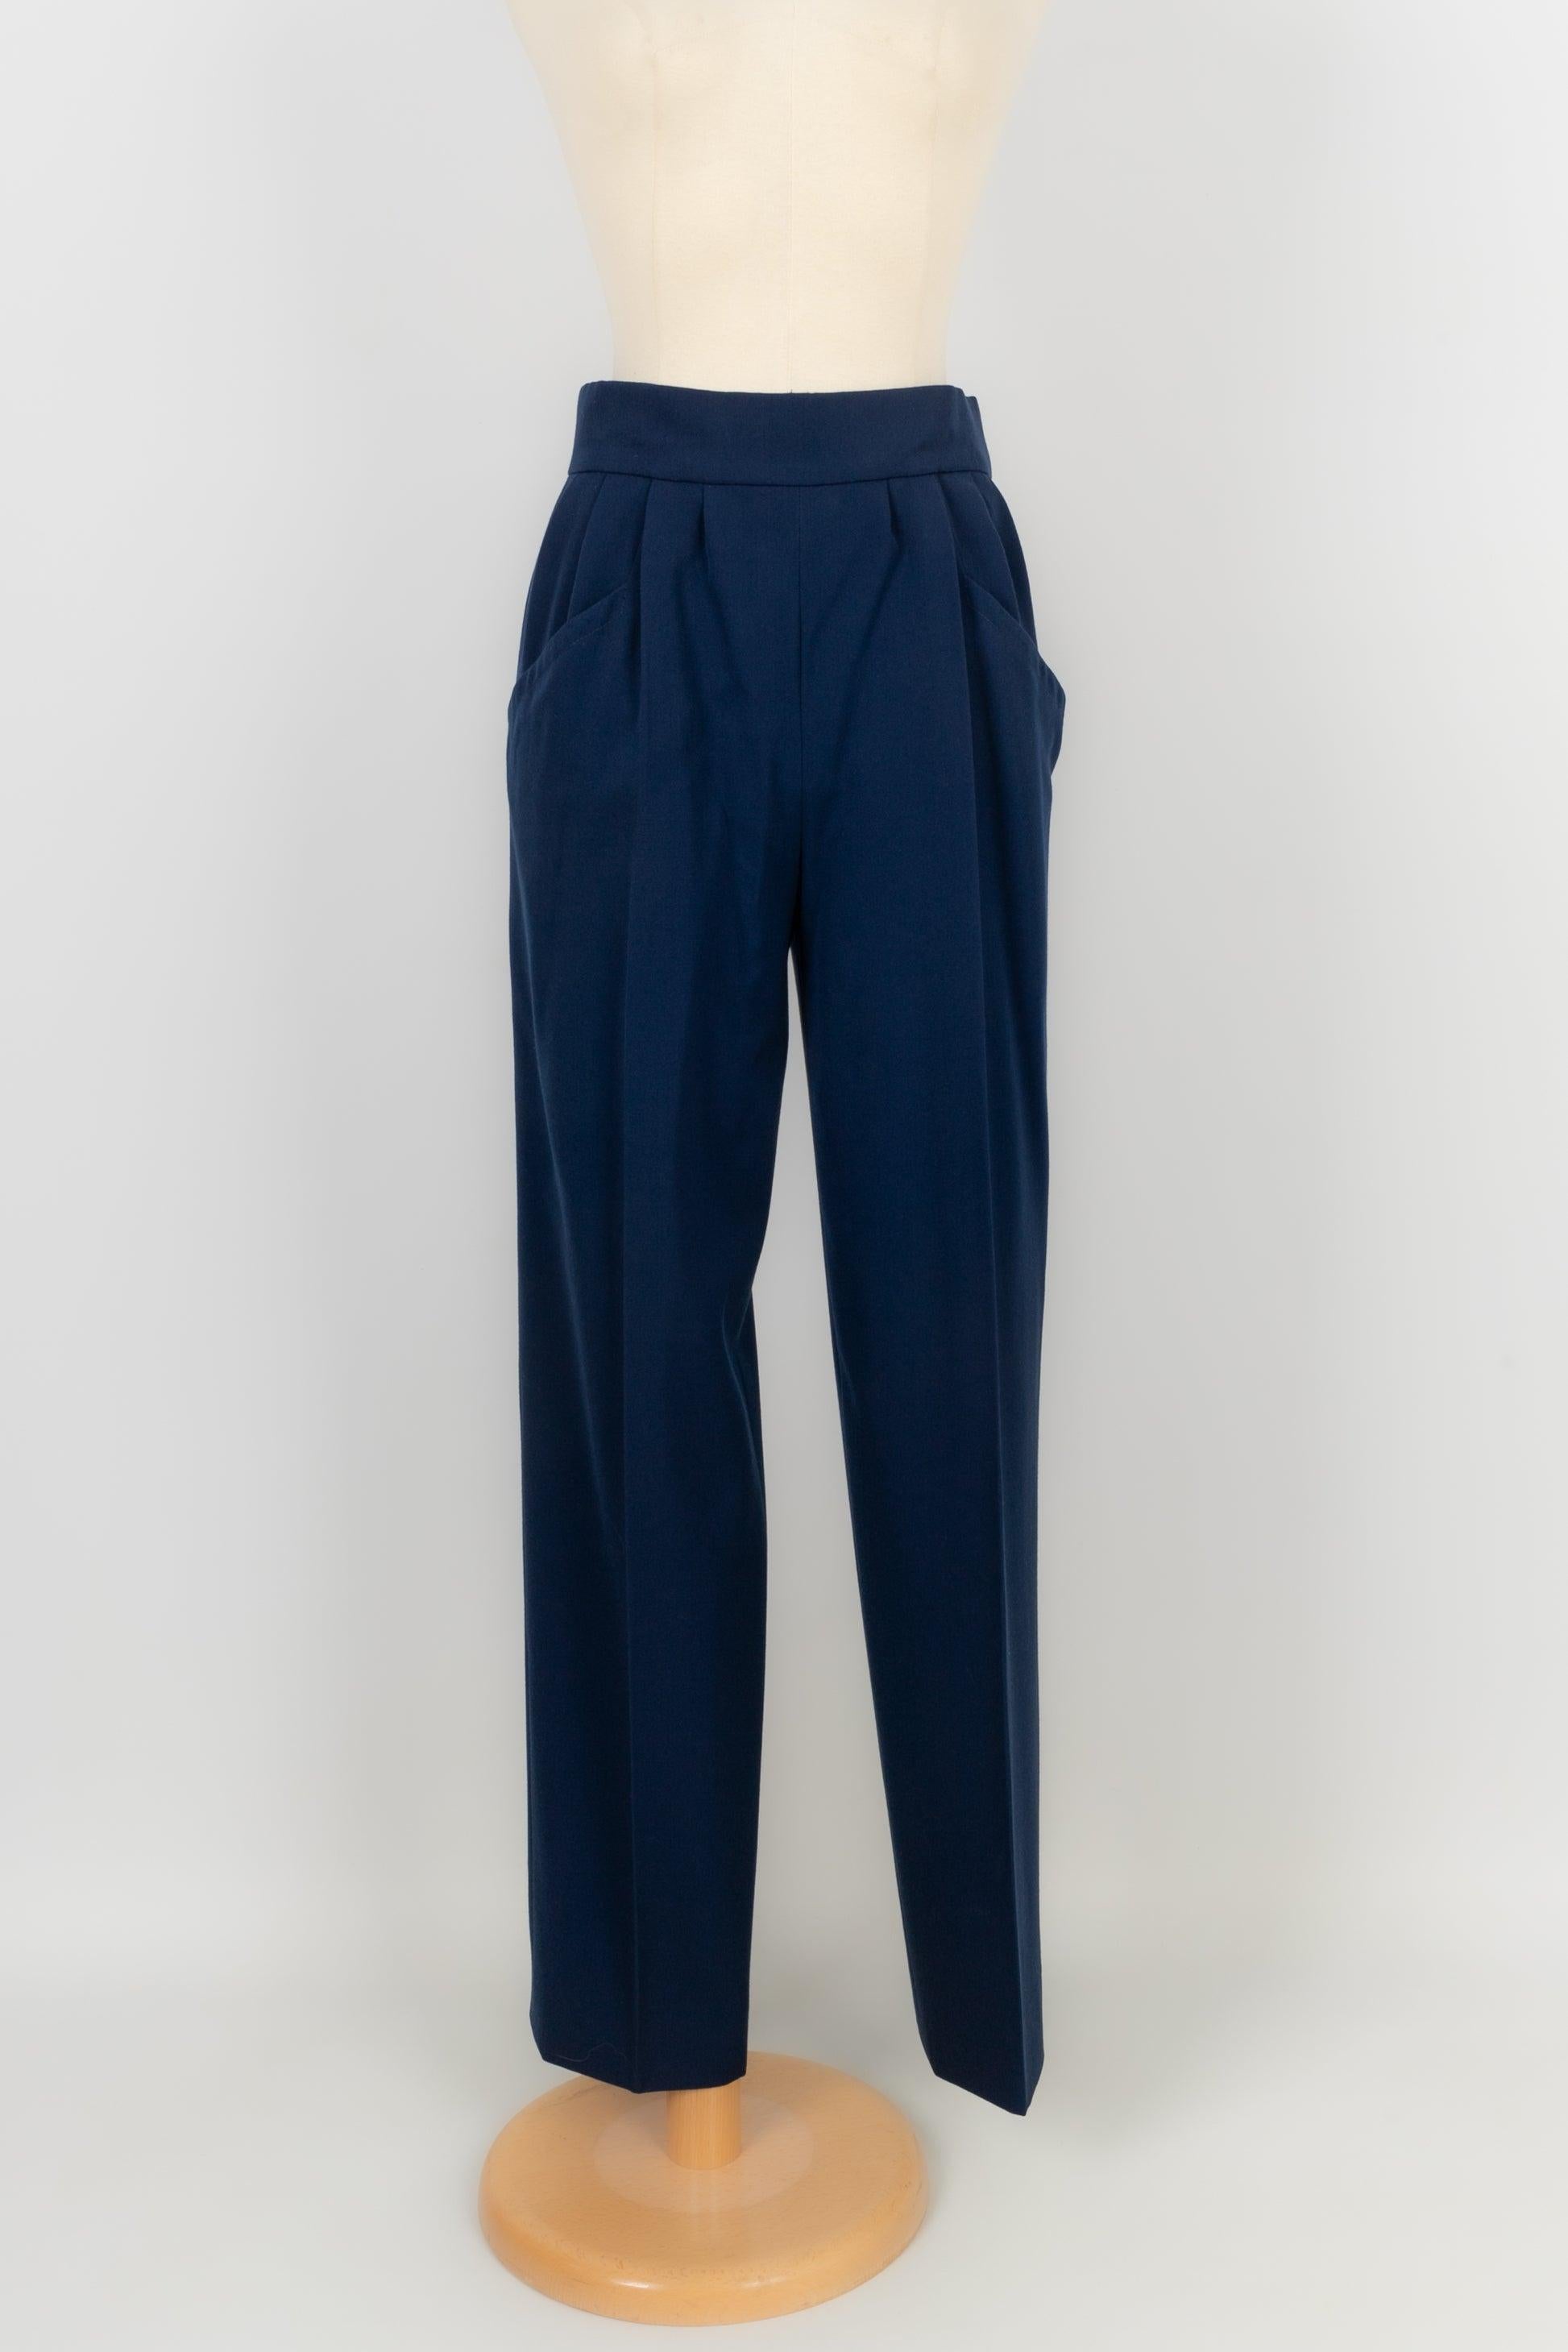 Yves Saint Laurent Blue Wool Pant Suit Haute Couture 36FR/38FR 8